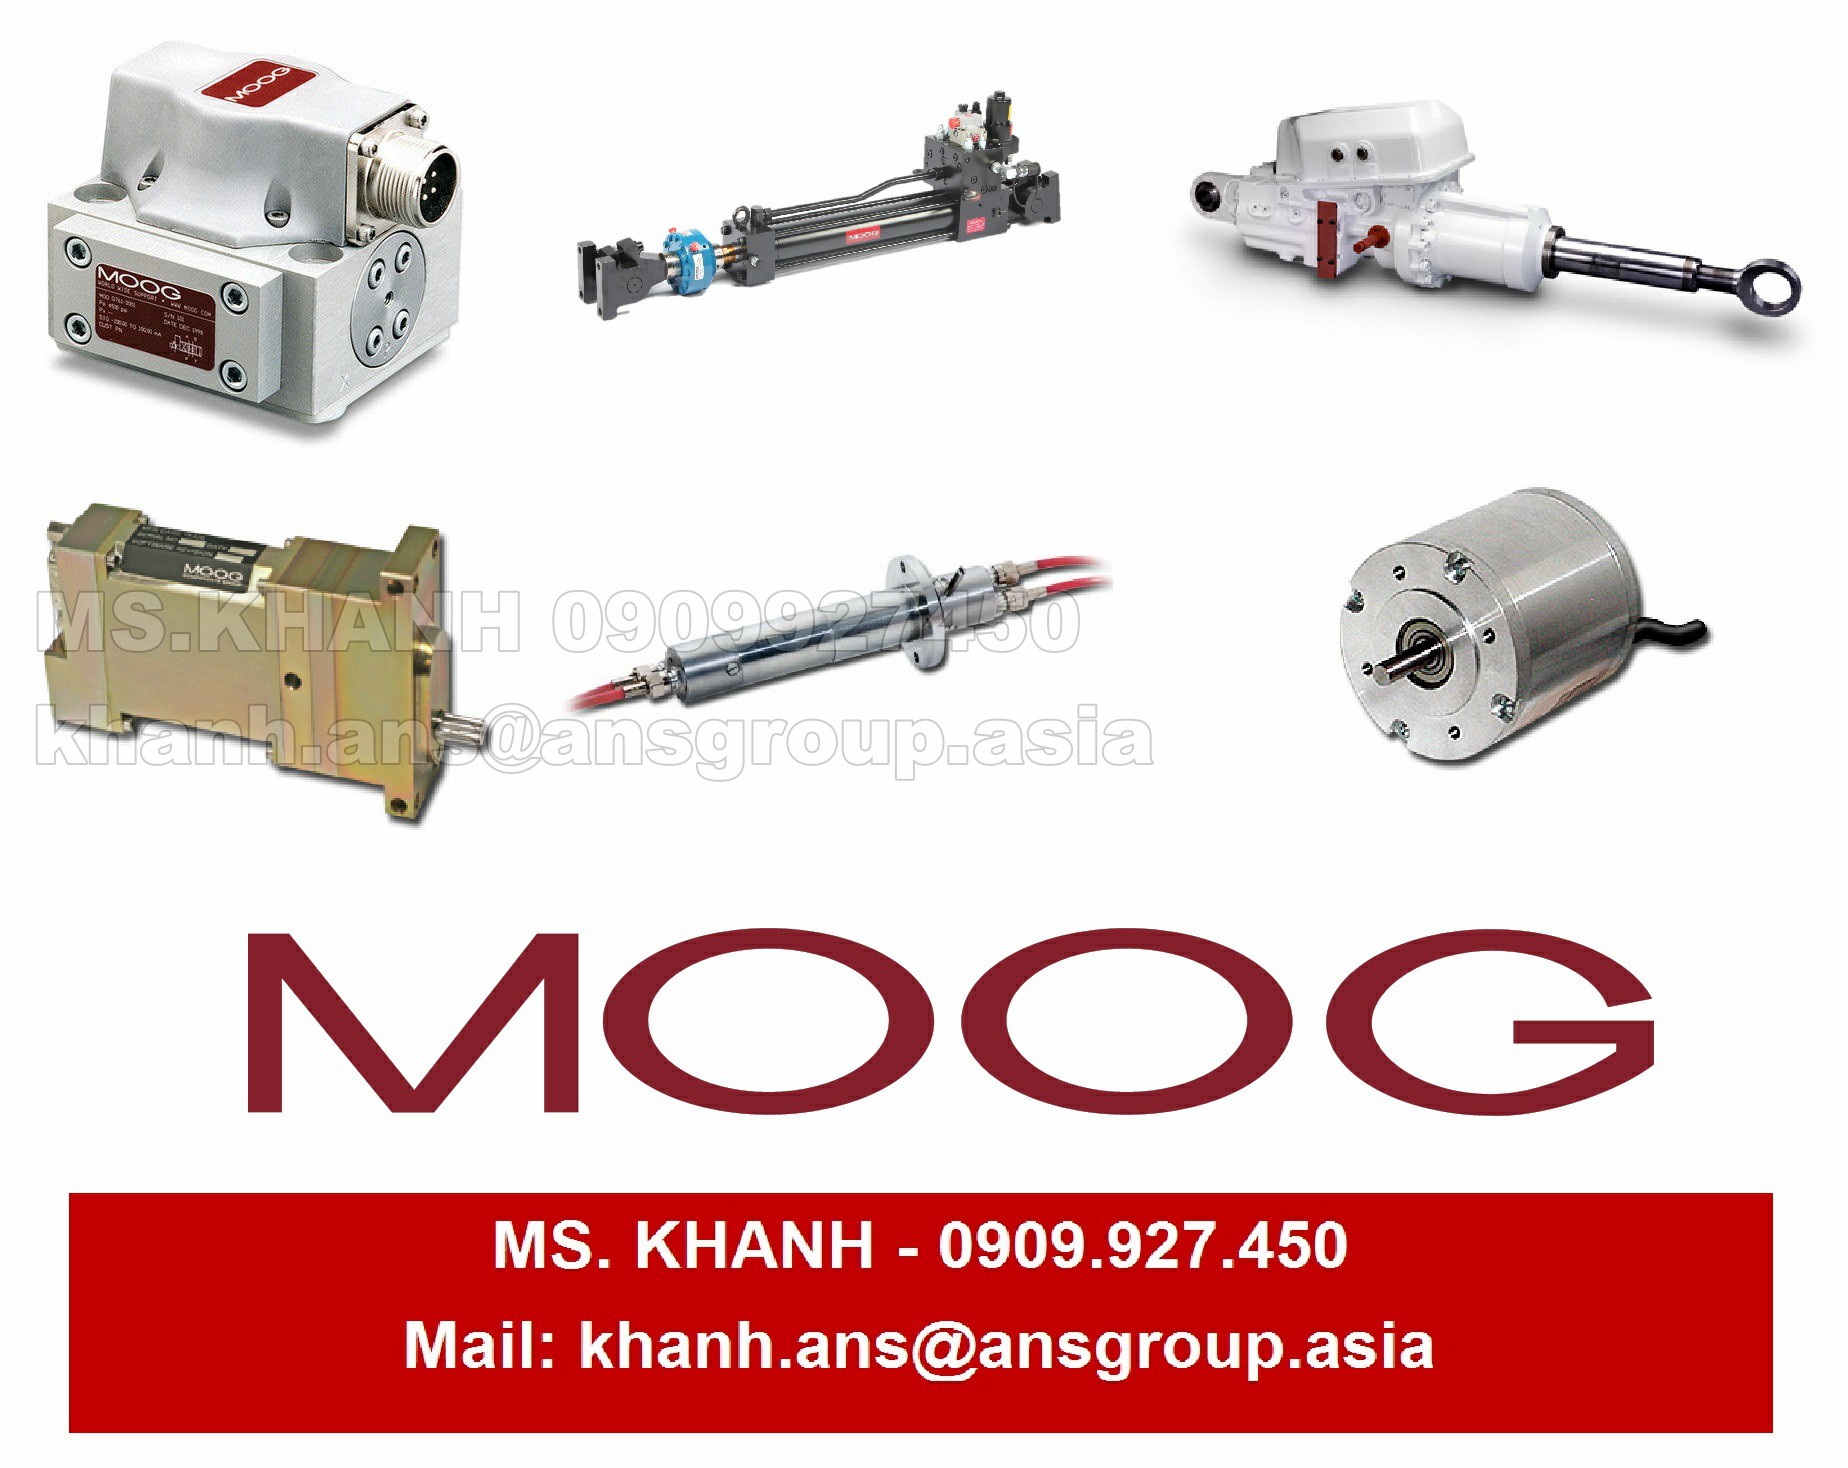 van-g761-3033b-valve-moog-chinh-hang.png